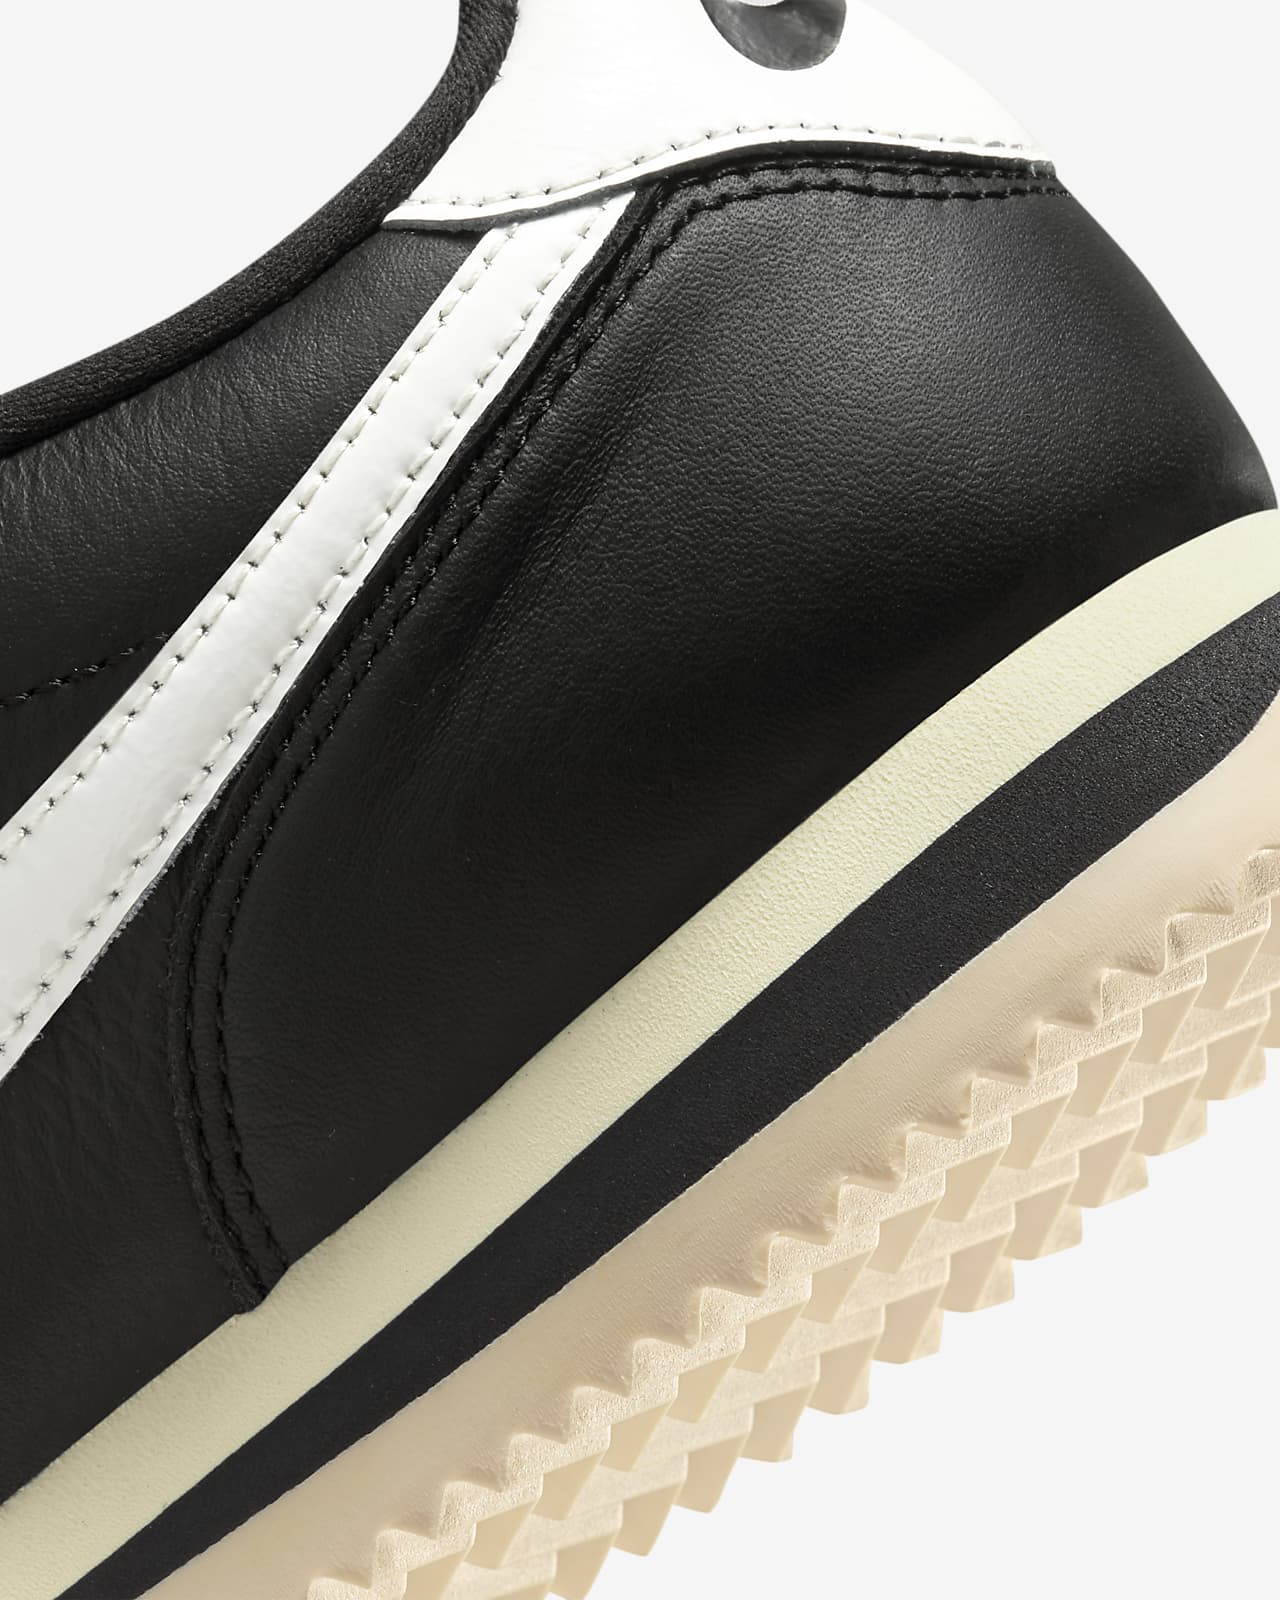 Nike Cortez 23 Premium Leather Shoes